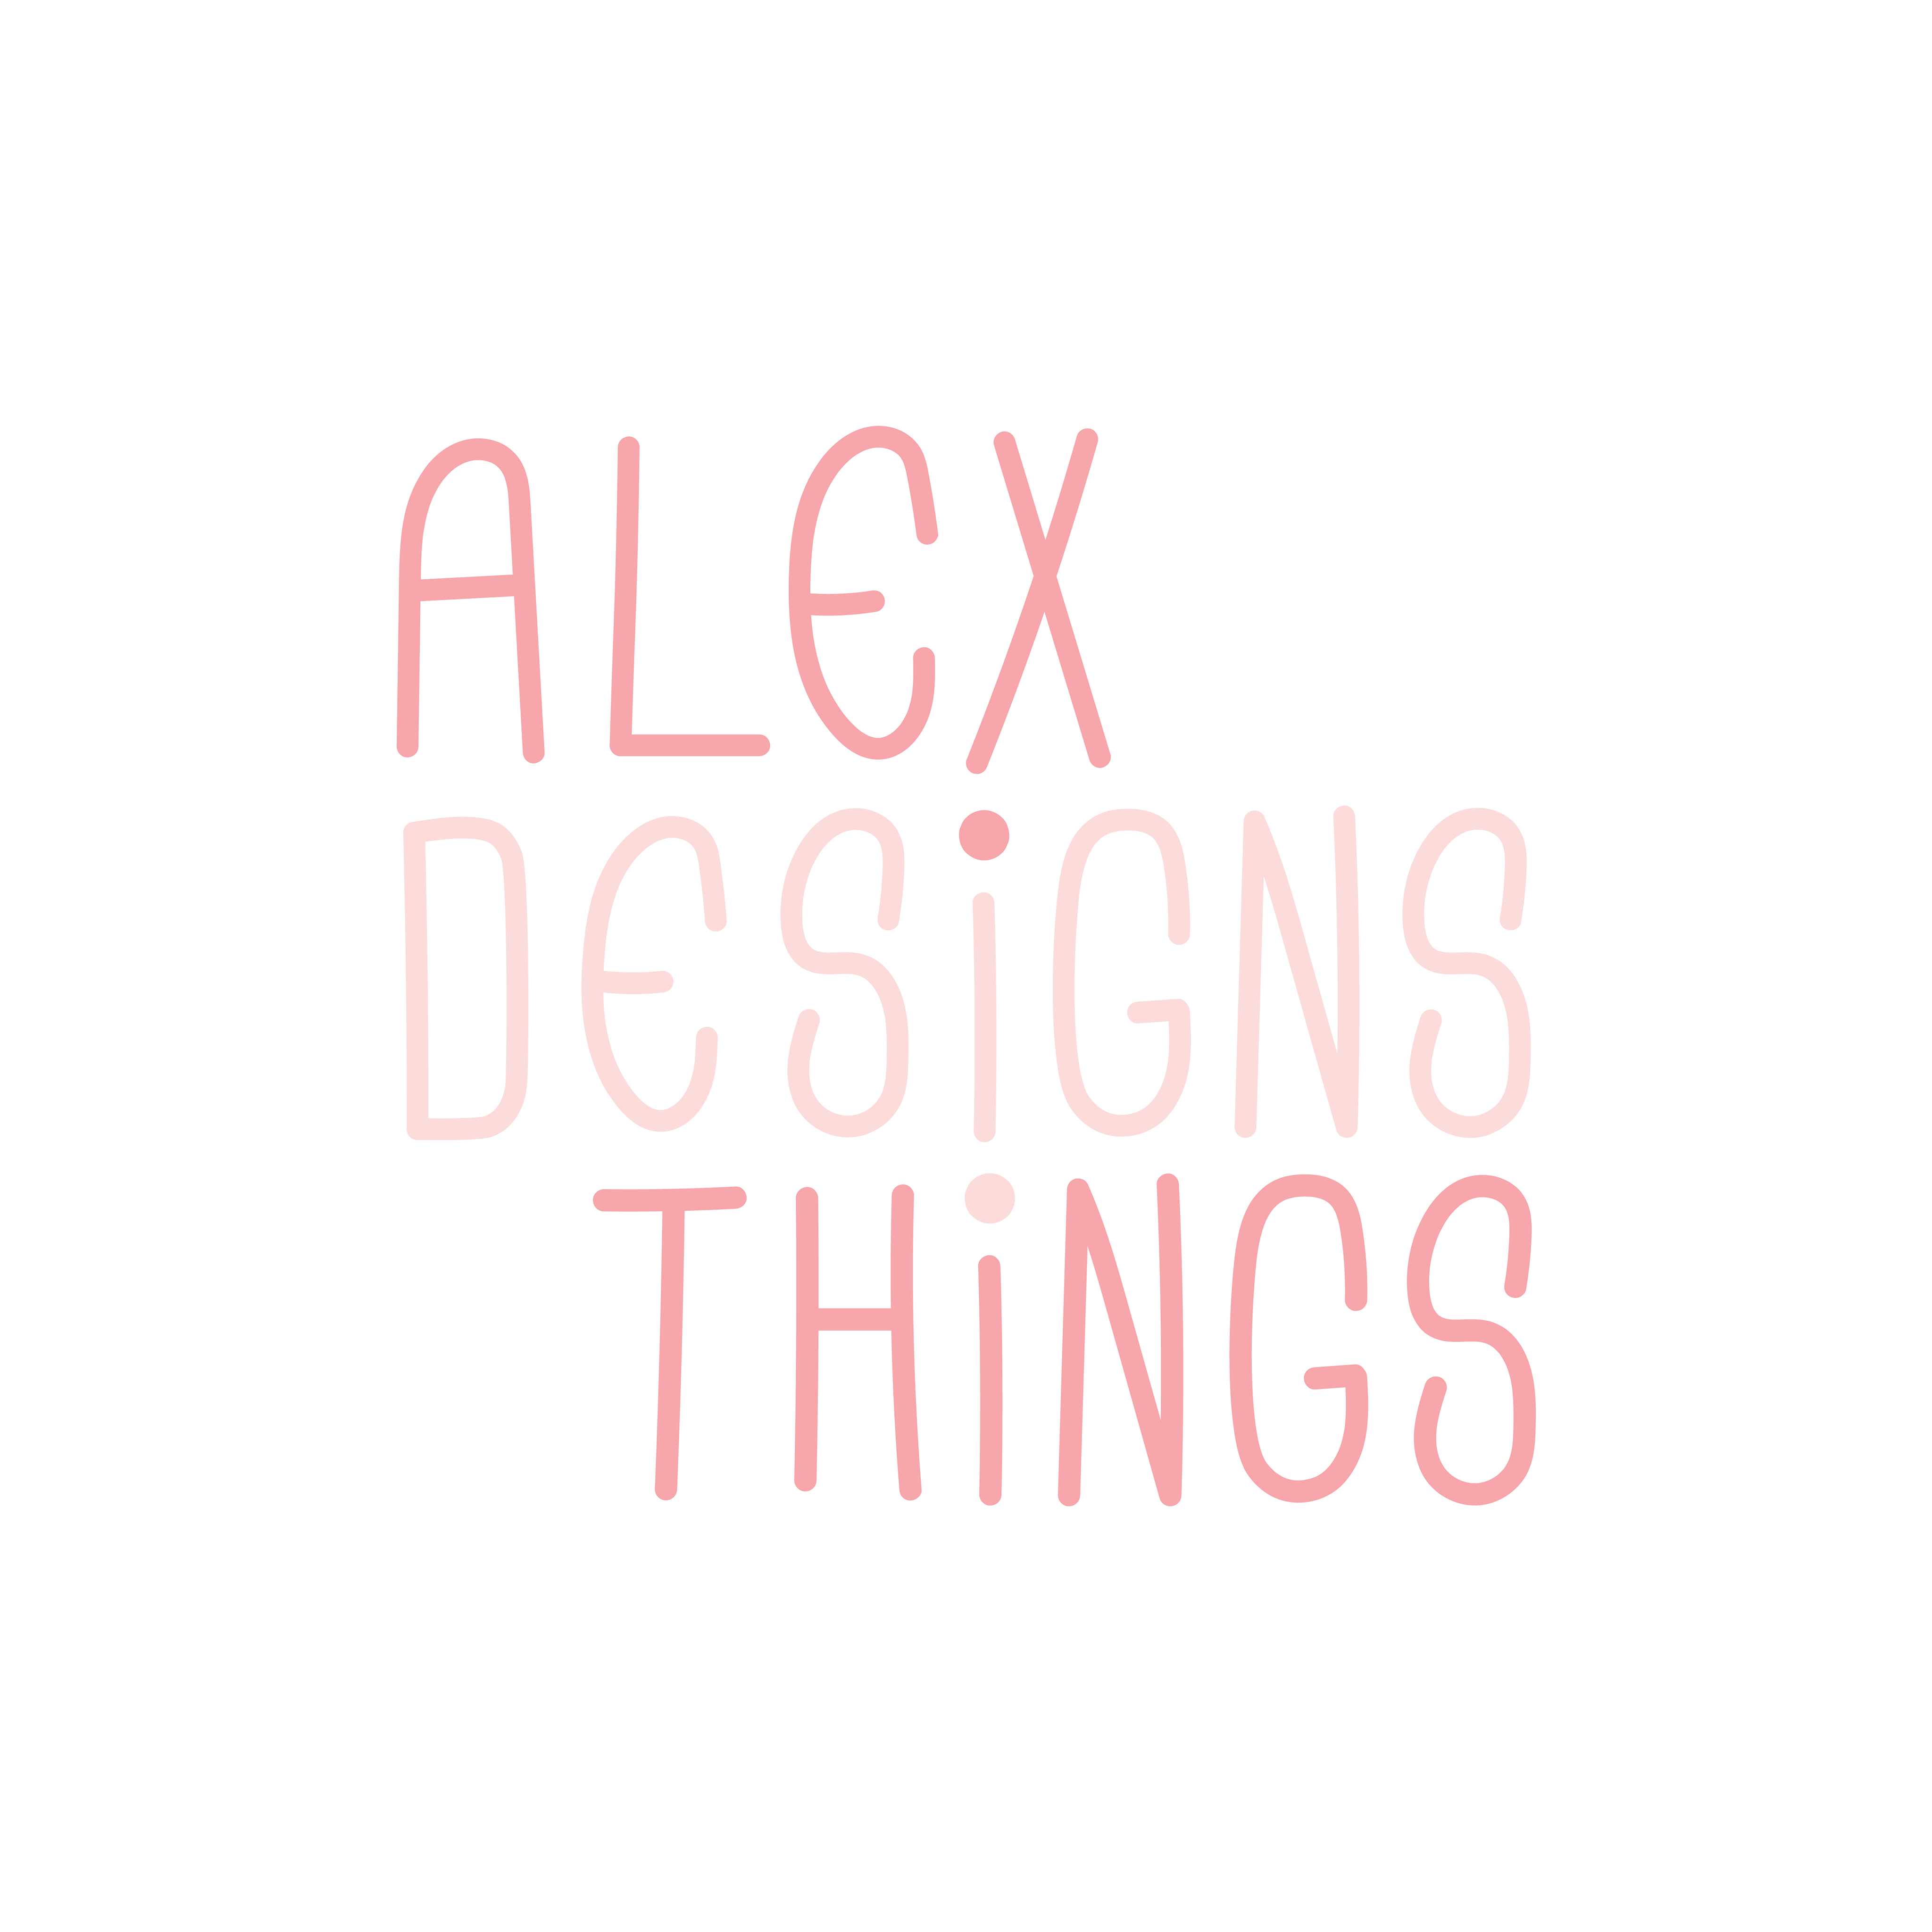 Alex Designs Things